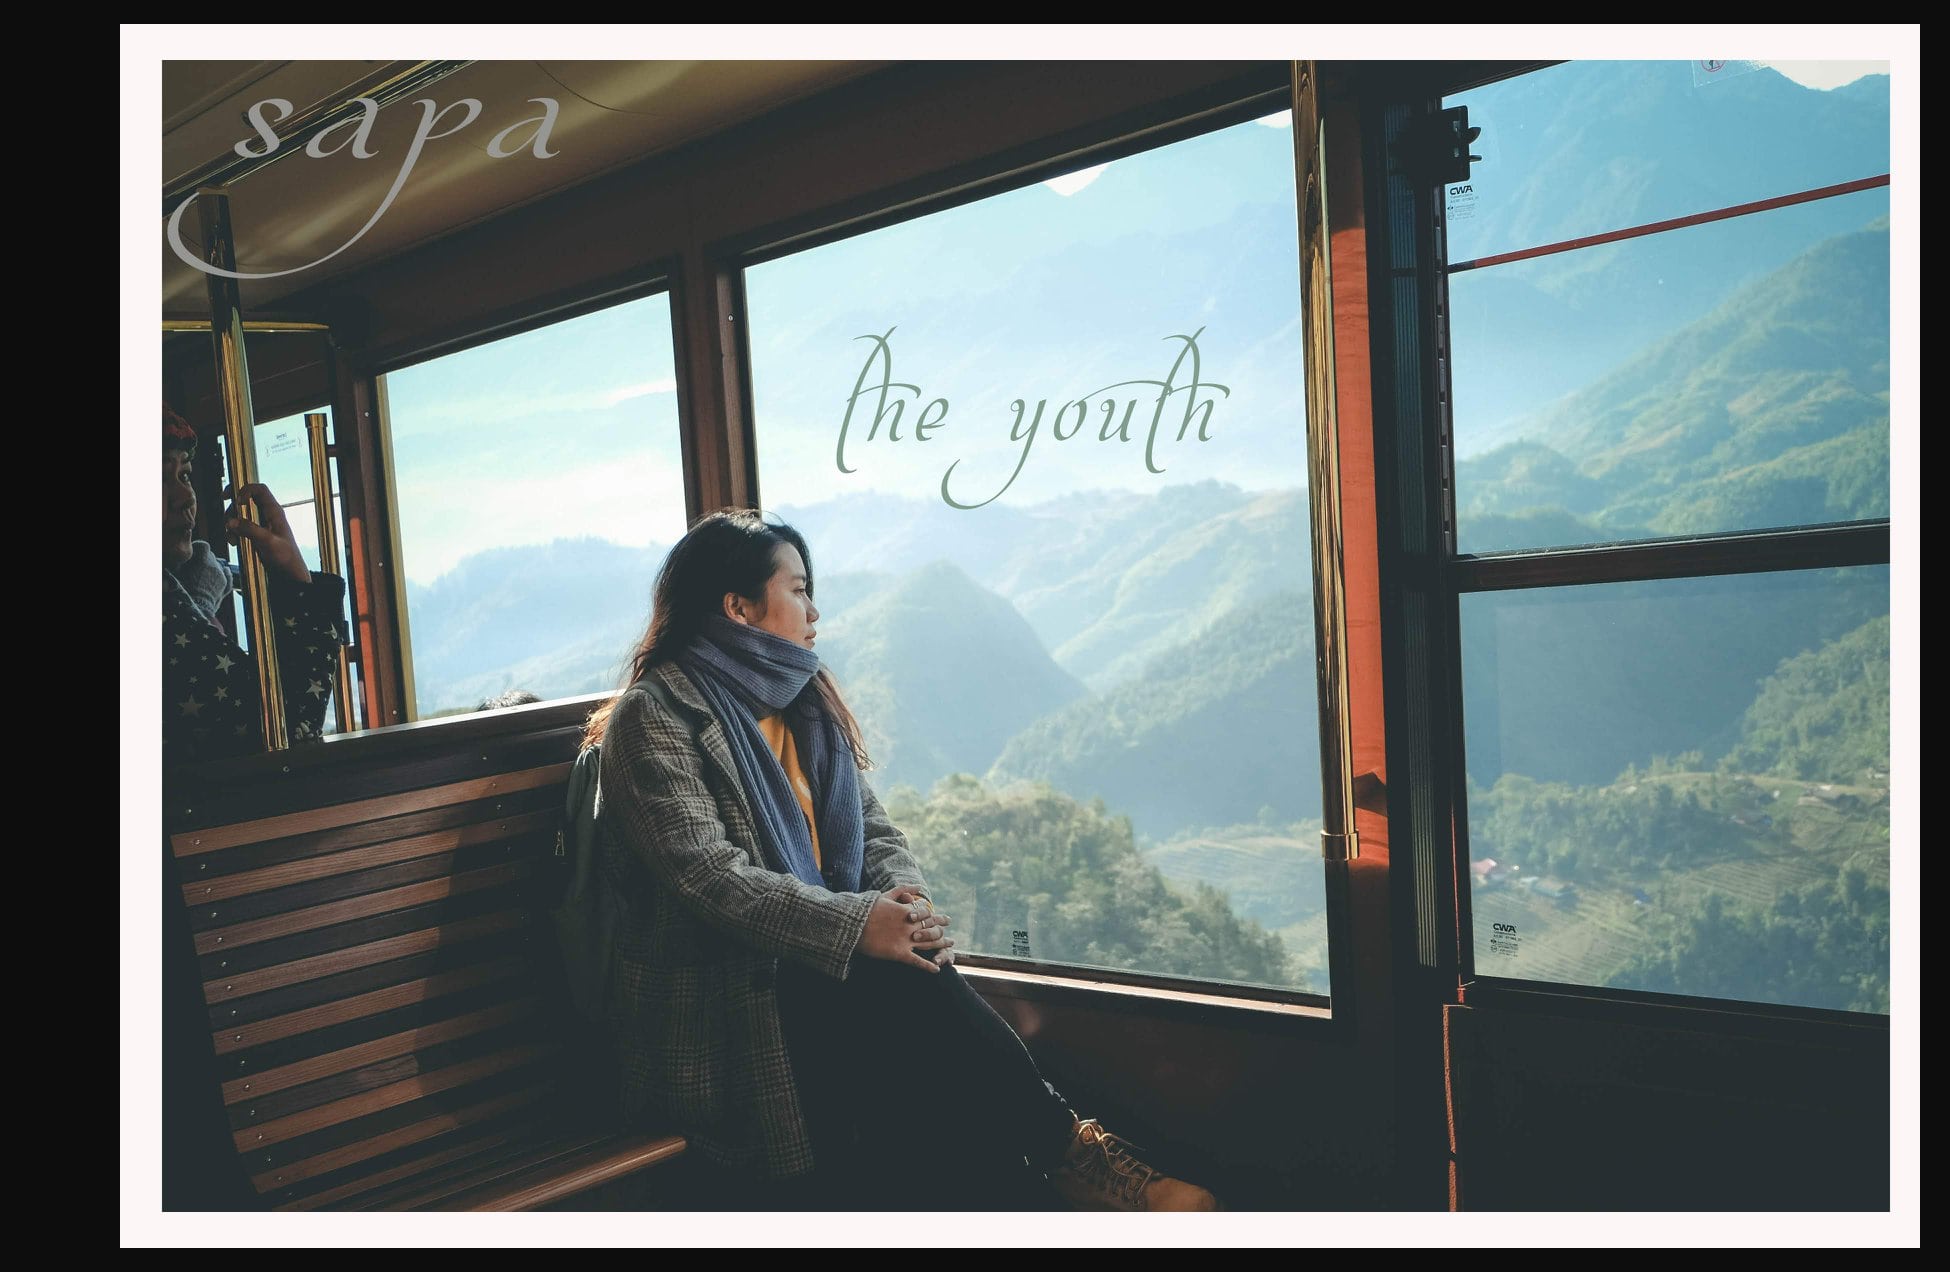 Tàu hỏa Mường Hoa với thiết kế cửa sổ kính rộng có thể quan sát vẻ đẹp thiên nhiên Sapa hùng vĩ